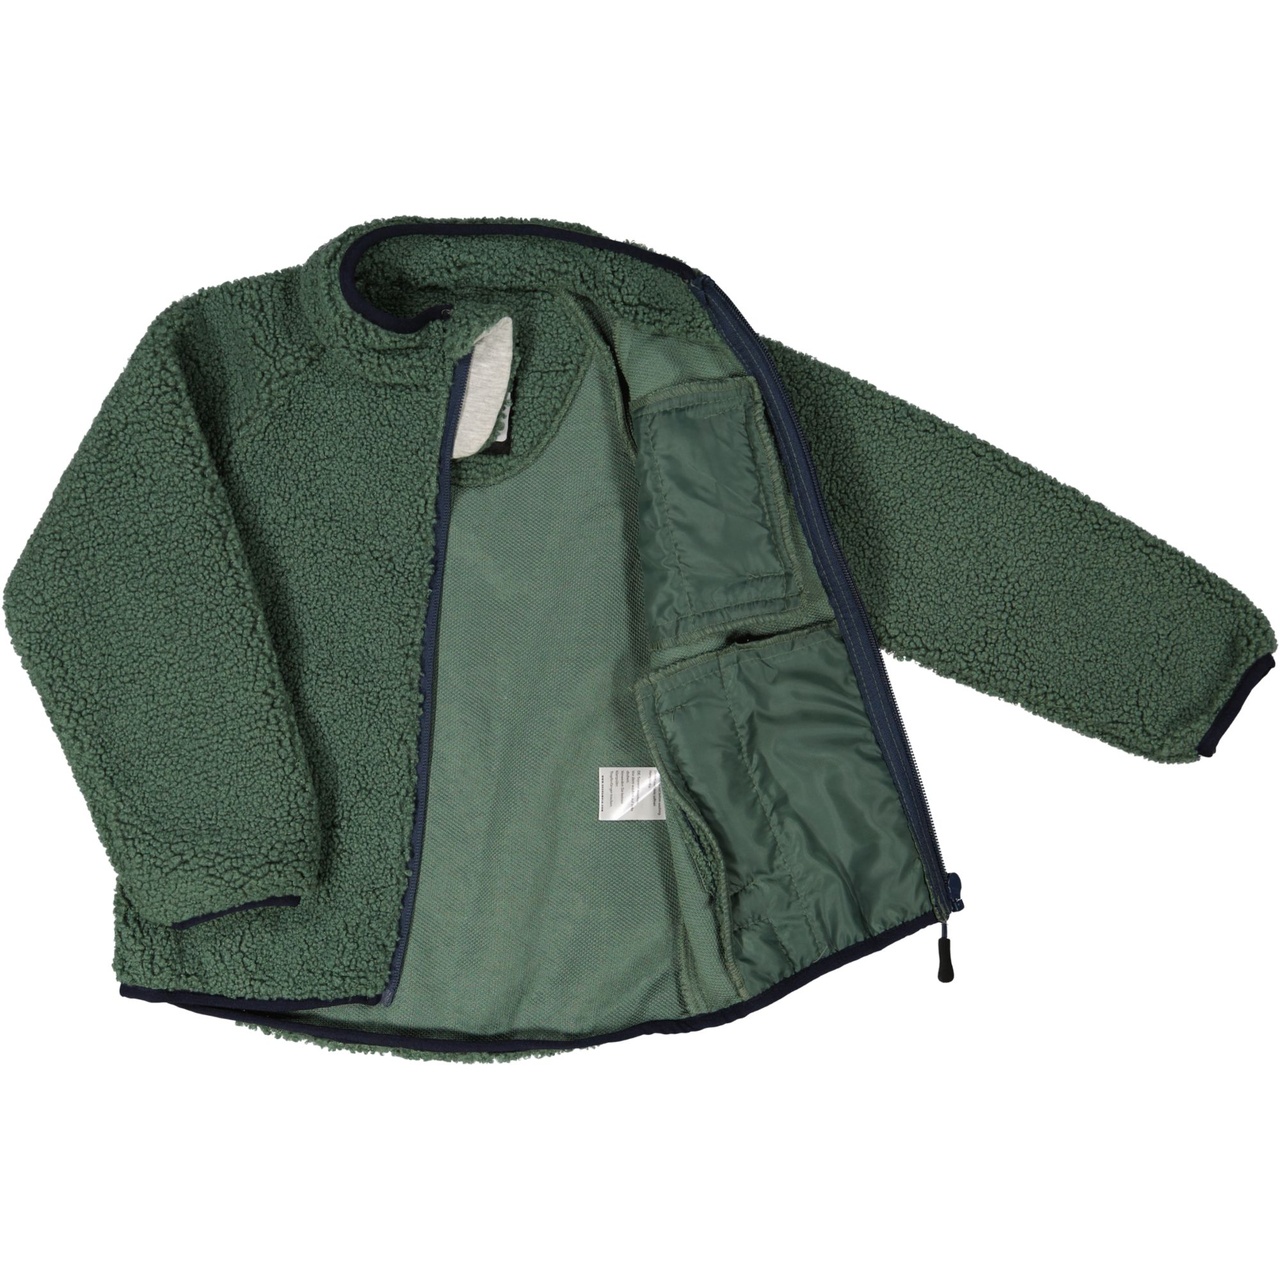 Pile jacket Moss green  86/92